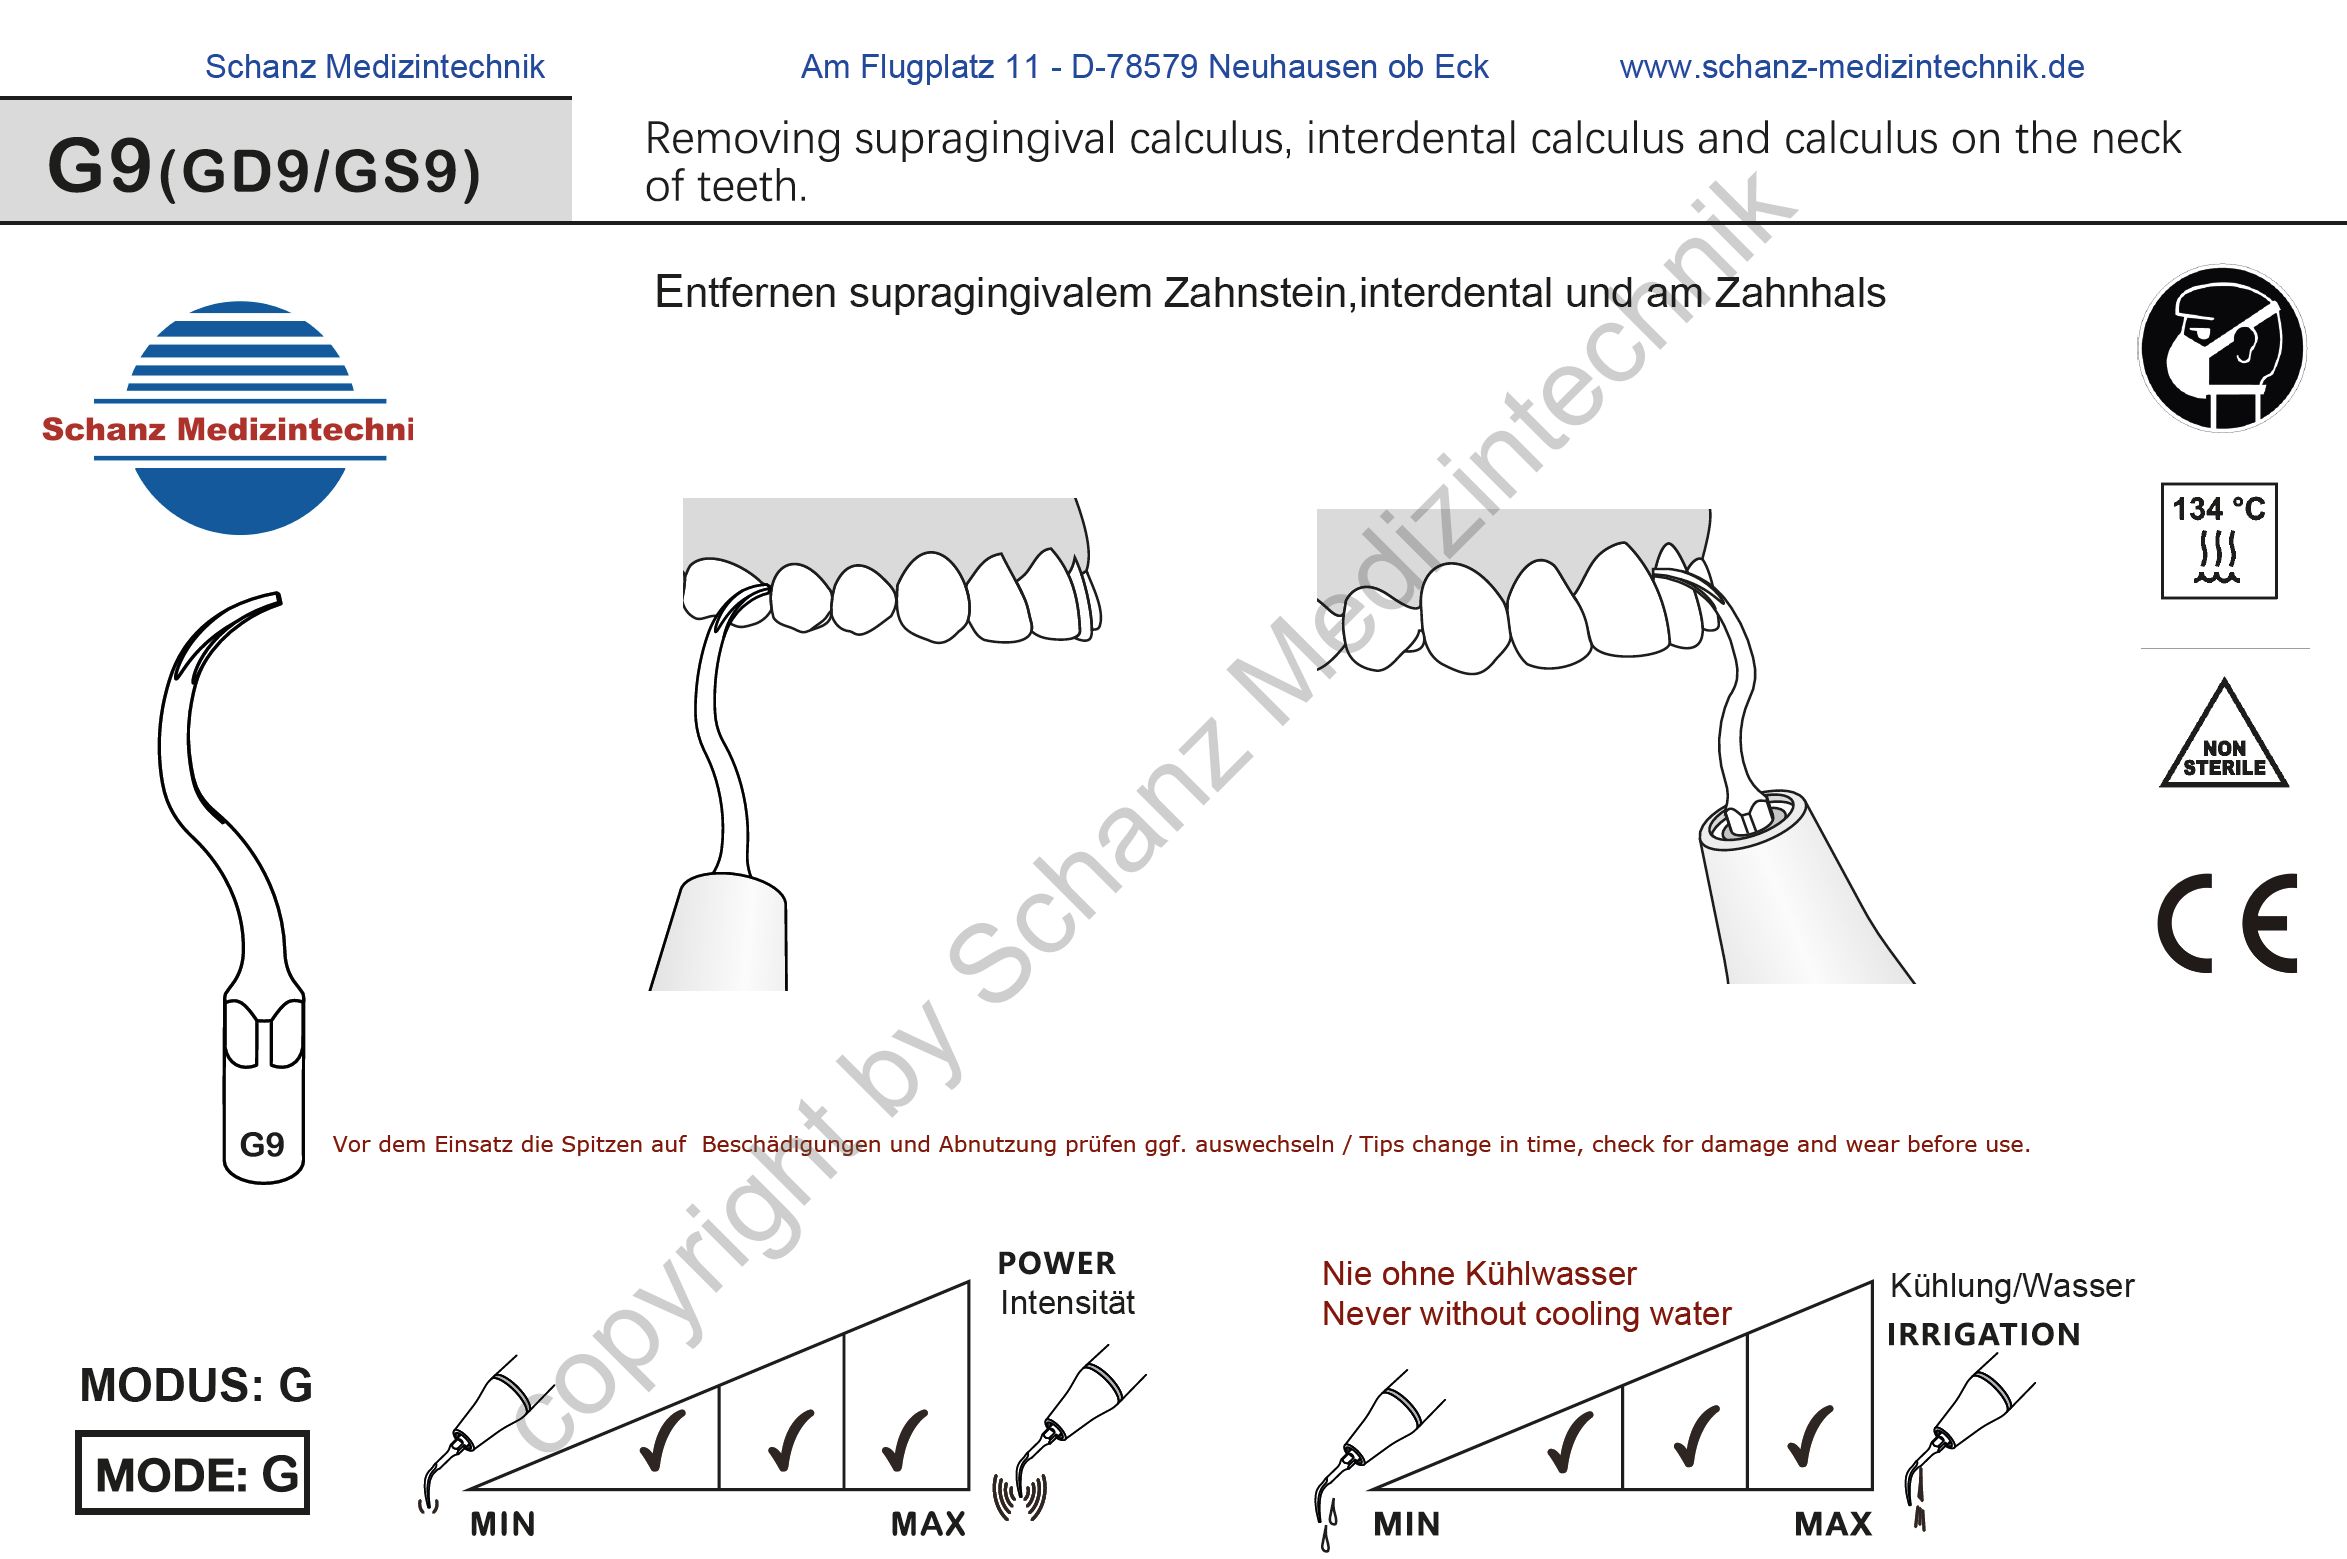  GD9 Ultraschallspitze - Zahnsteinentfernung supragingival, interdental und am Zahnhals